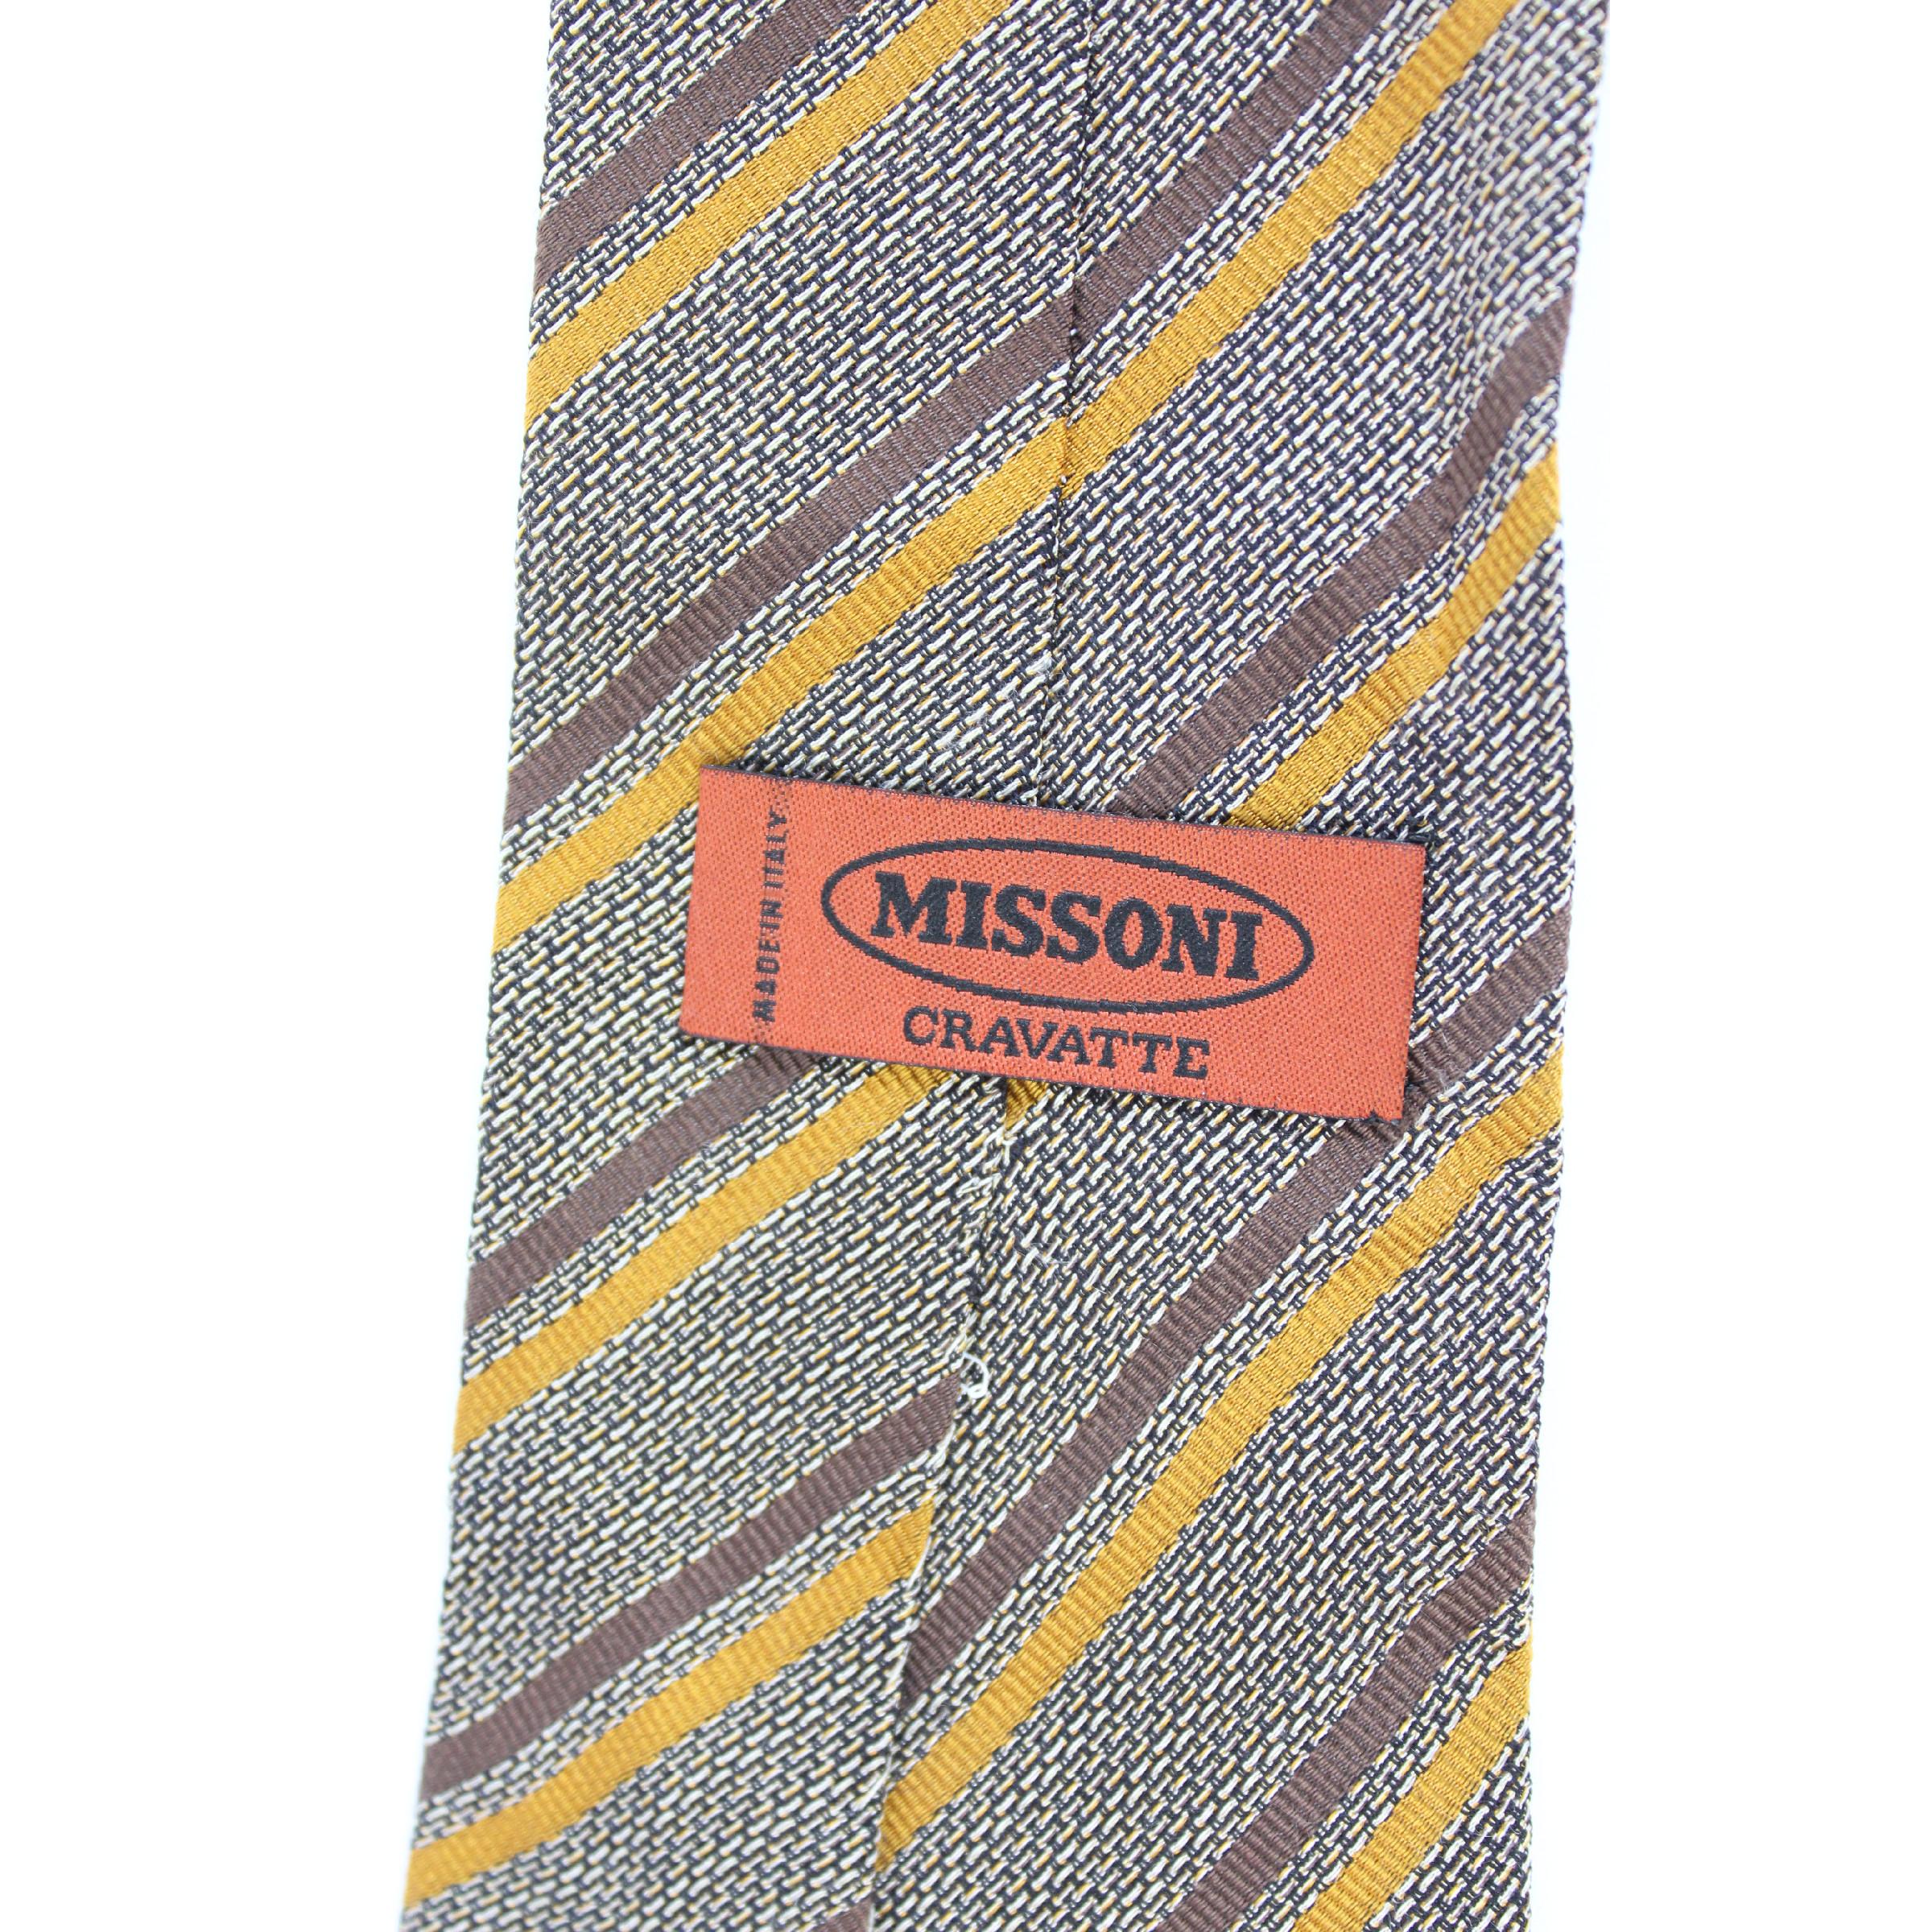 Vintage Missoni Krawatte. Gestreift in Braun und Beige, 100% Seide. Made in Italy. Ausgezeichneter Vintage-Zustand

Länge: etwa 150 cm
Breite: etwa 10 cm